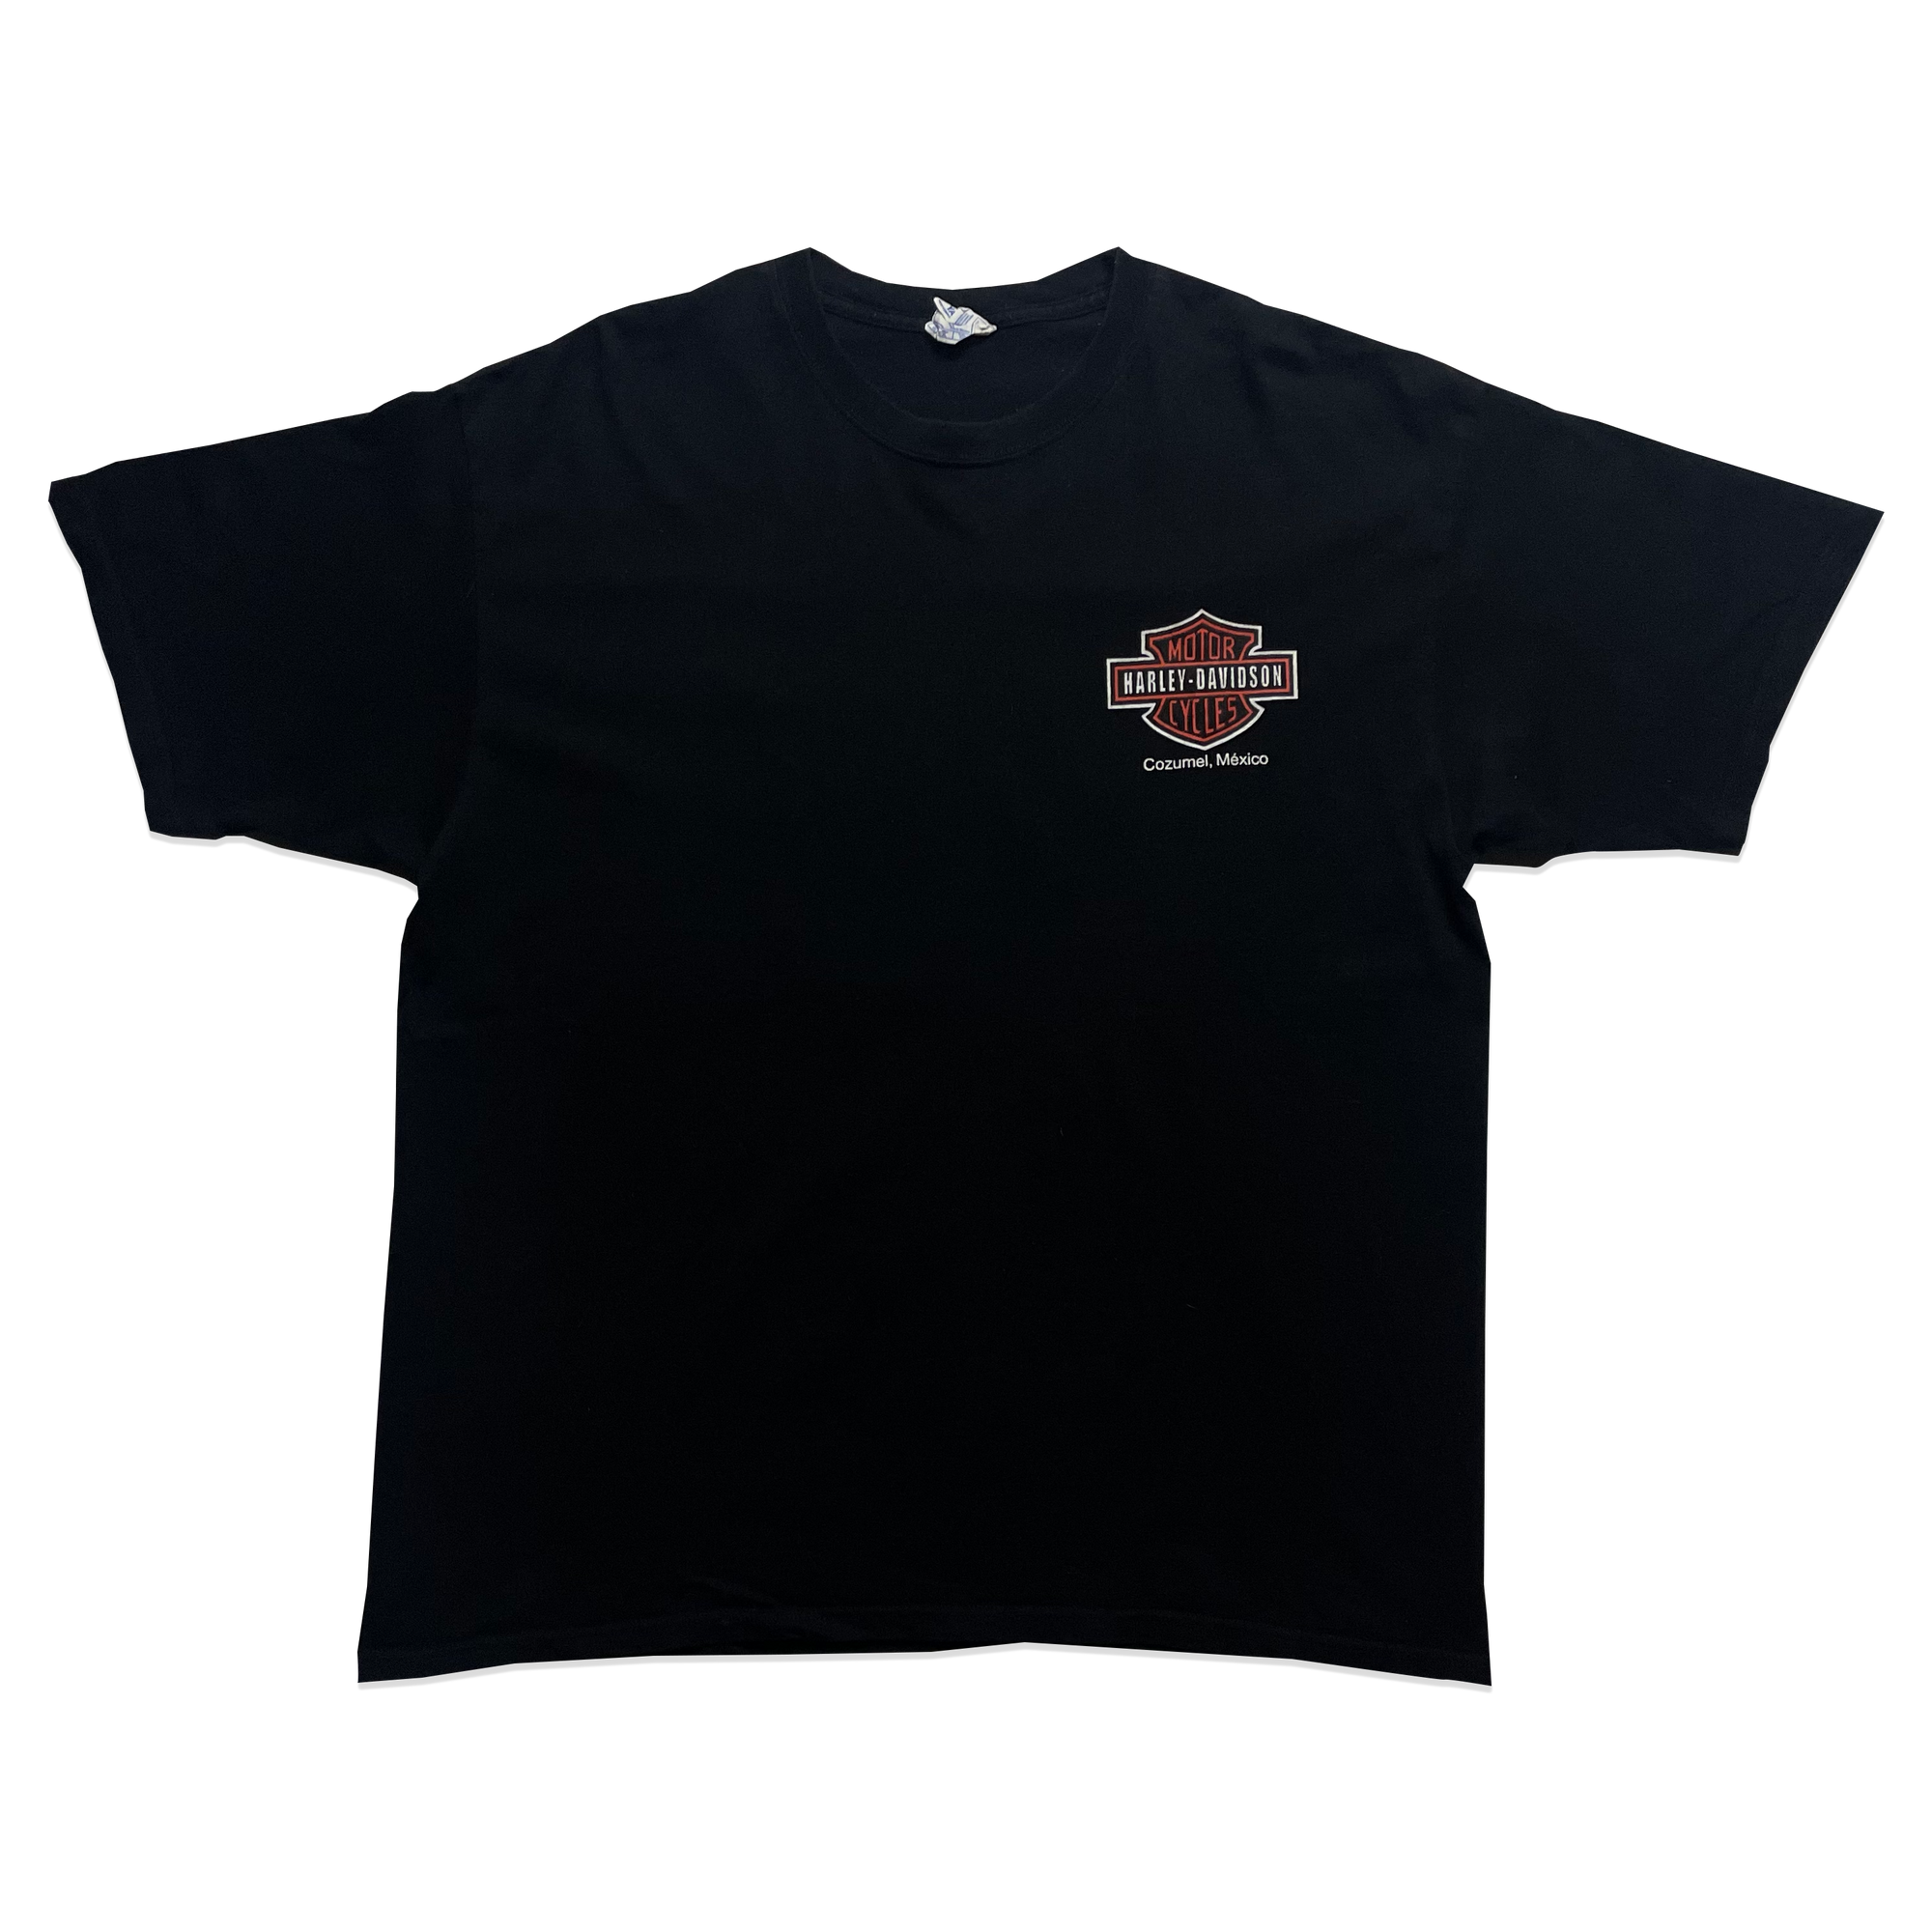 T-shirt - Harley Davidson - Noir